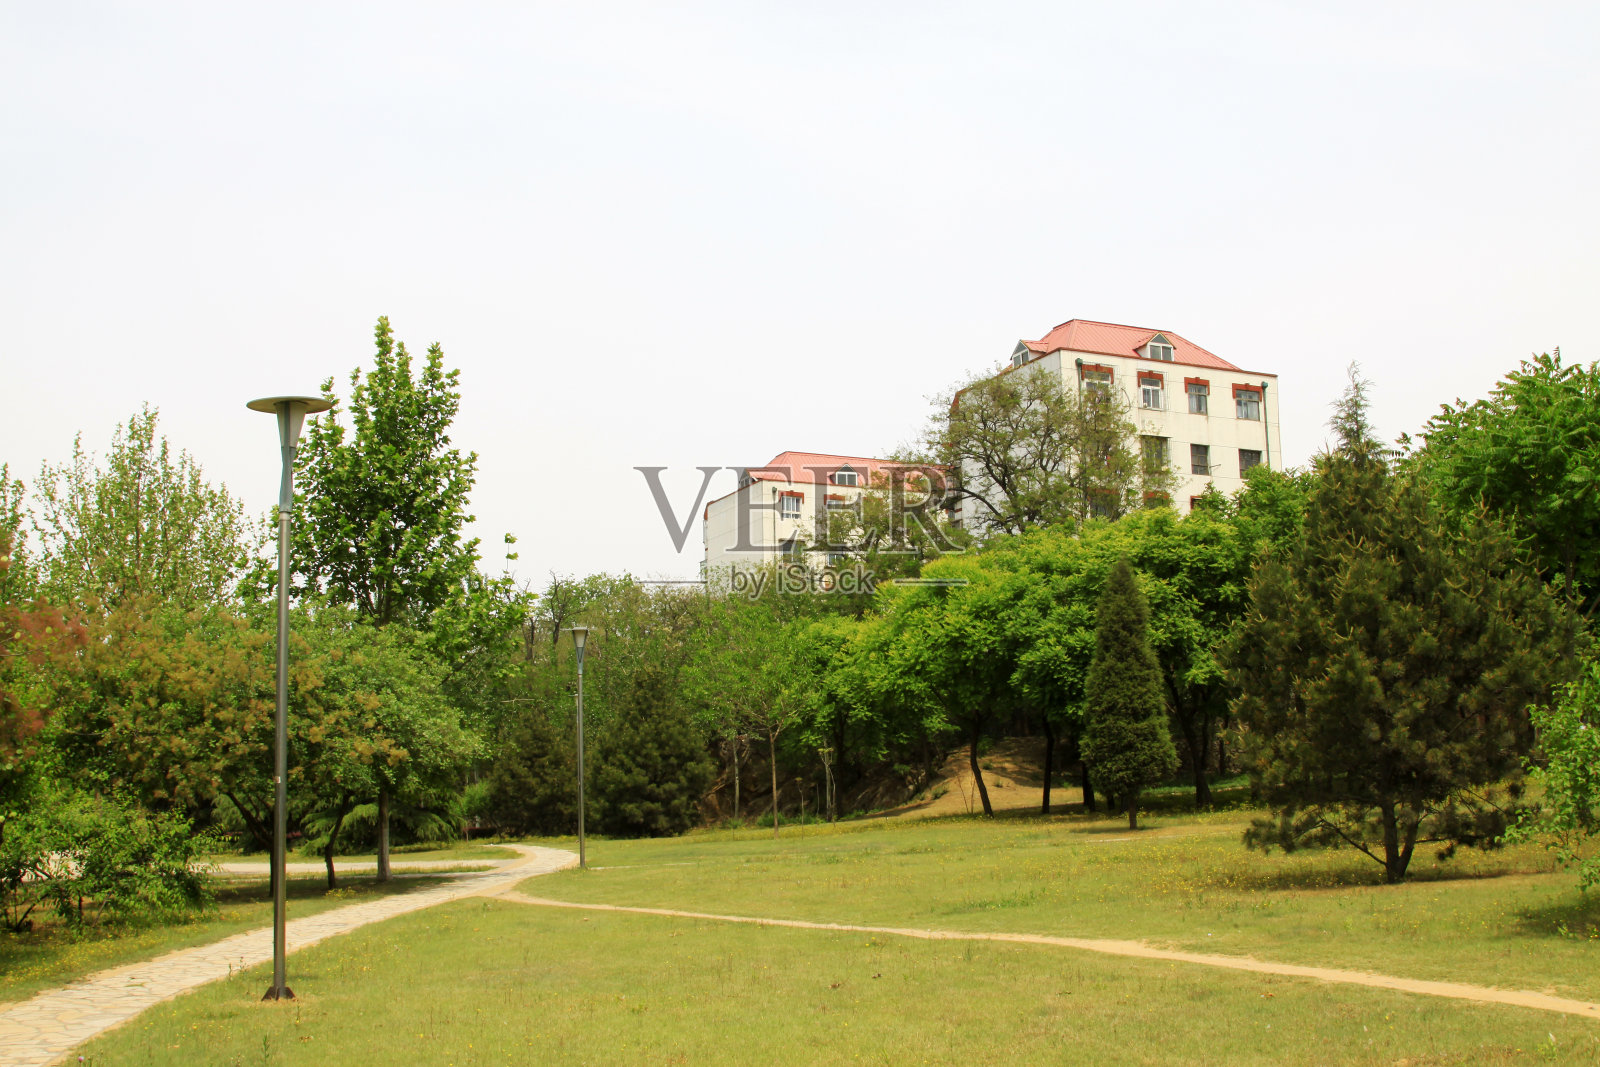 中国河北省唐山市的公园绿地和建筑照片摄影图片